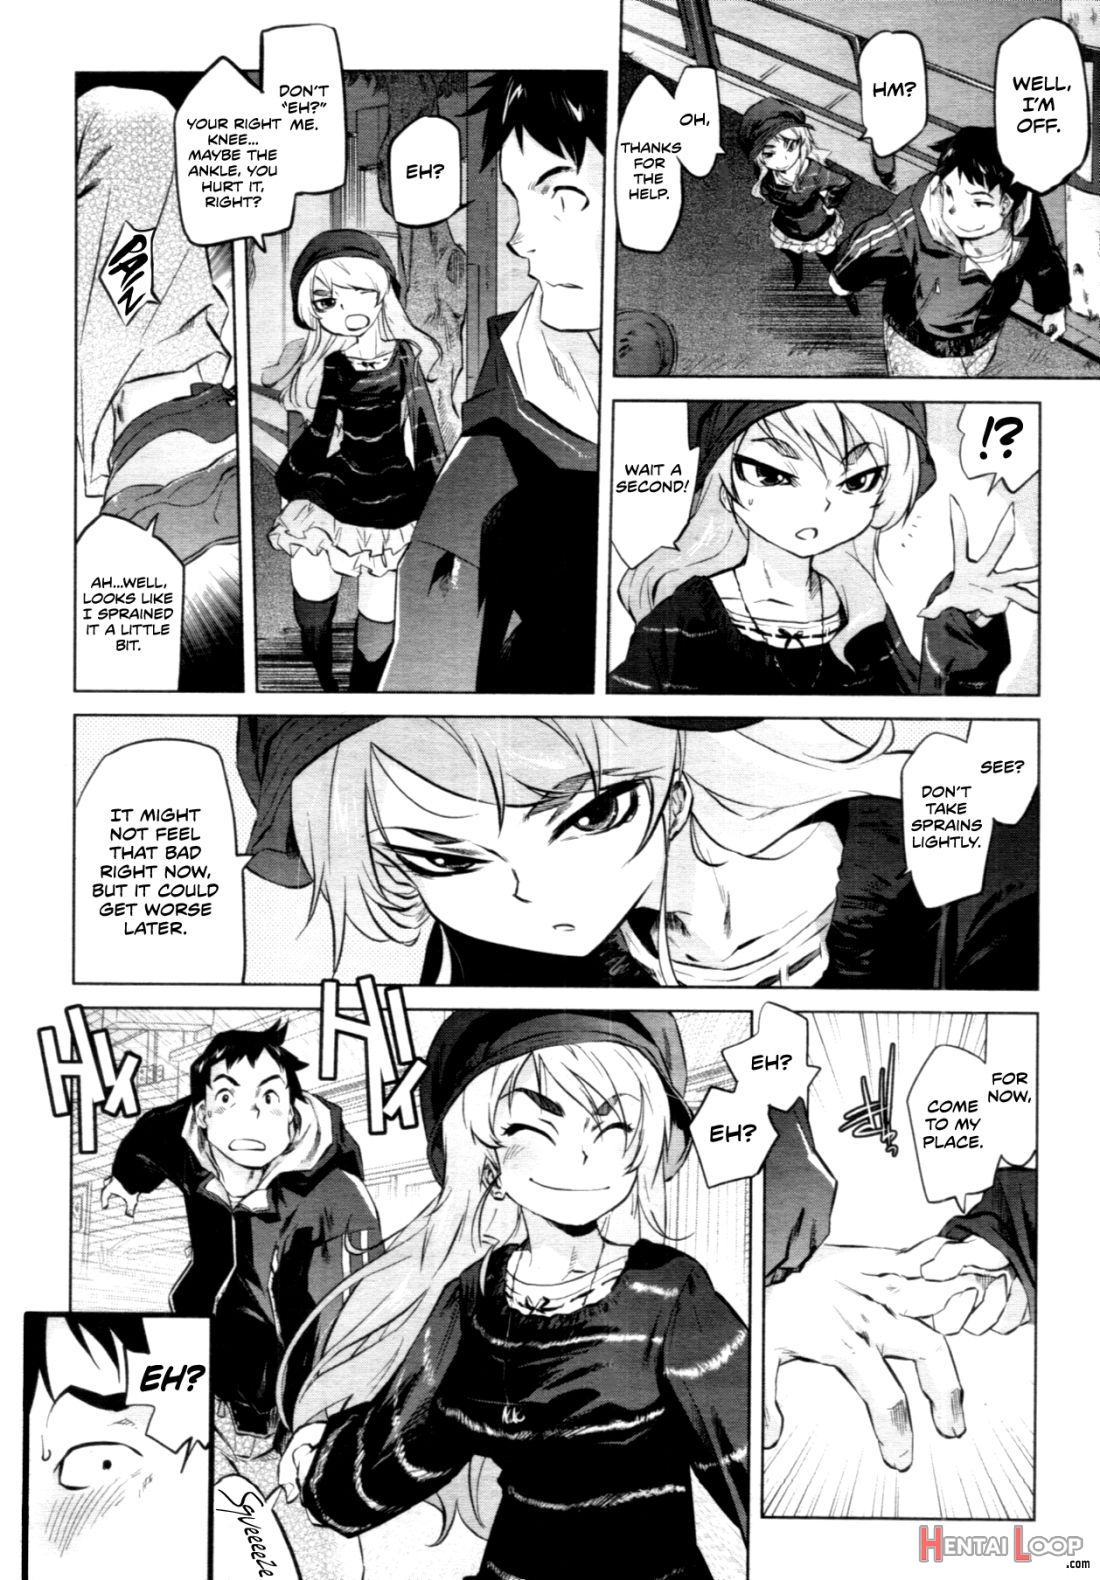 Arasa Seikotsuin No Jikenbo page 3